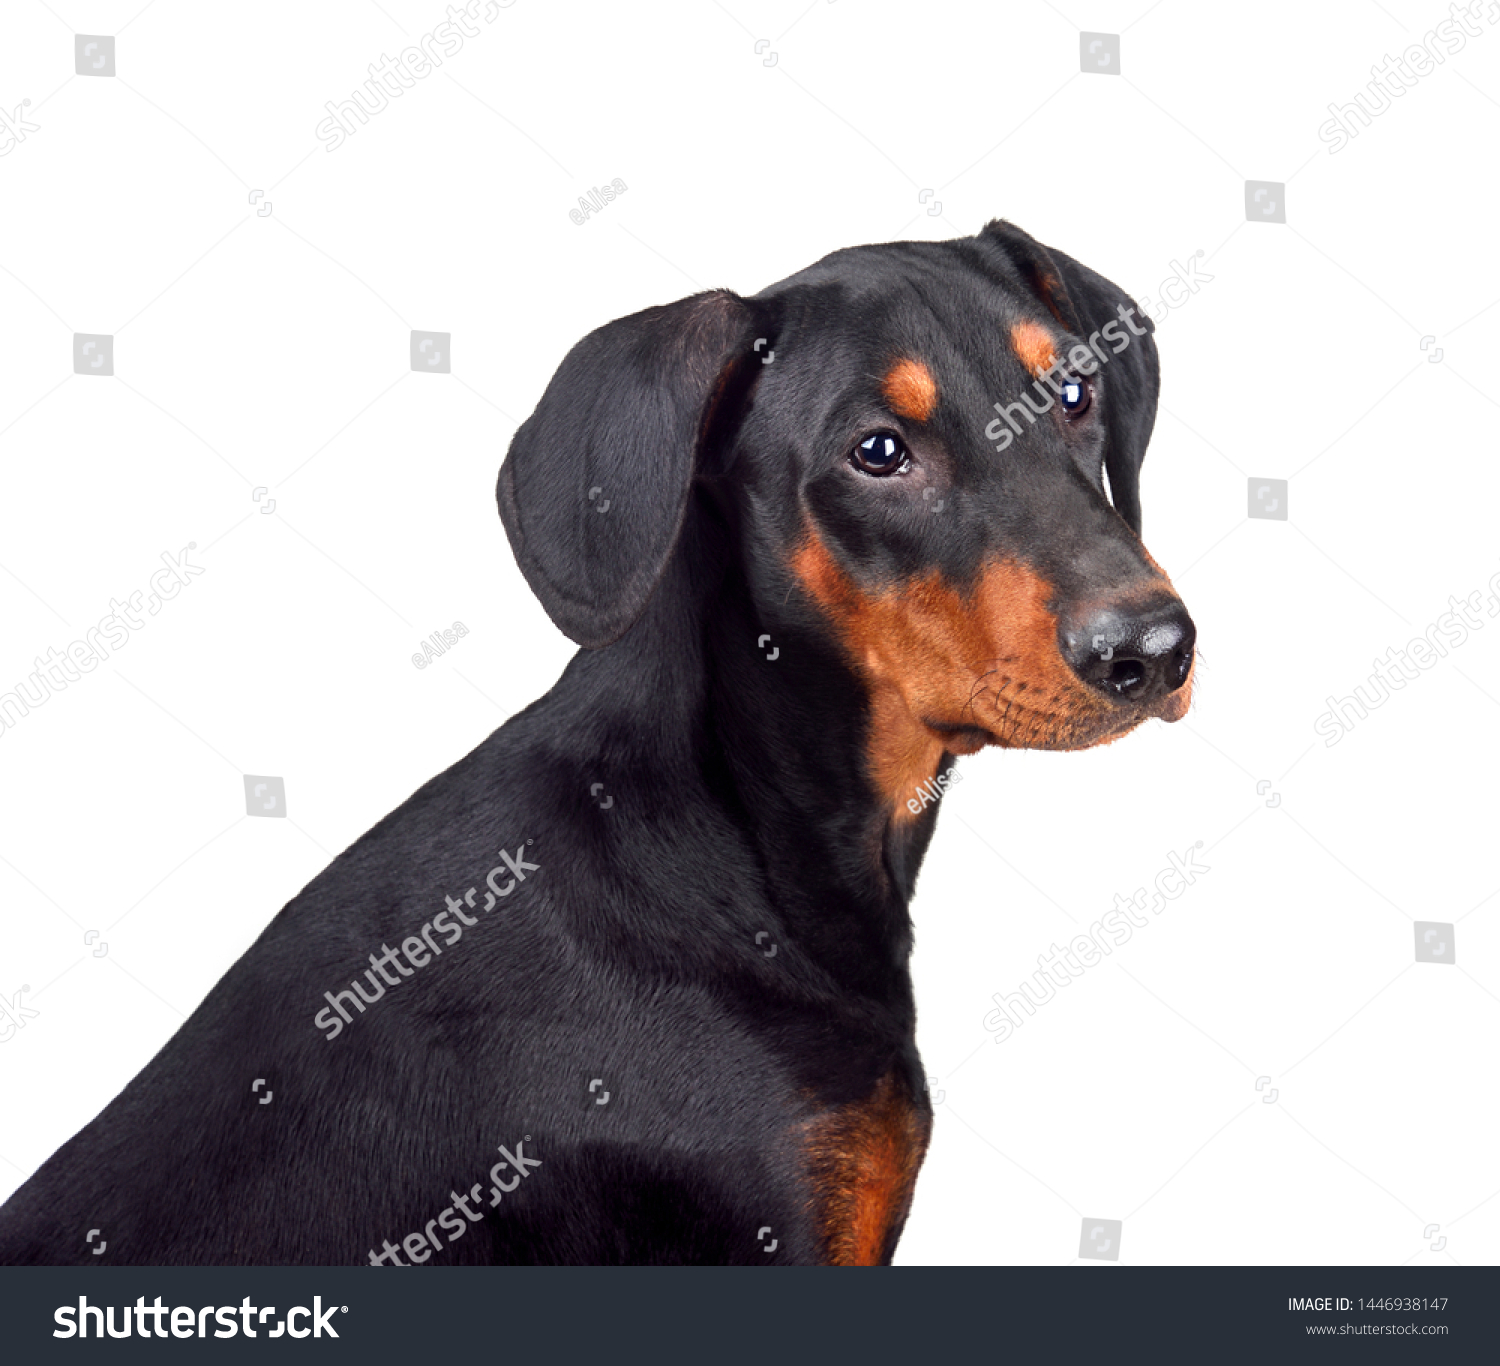 Puppy Tanandblack German Pinscher Doberman Pinscher Animals Wildlife Stock Image 1446938147